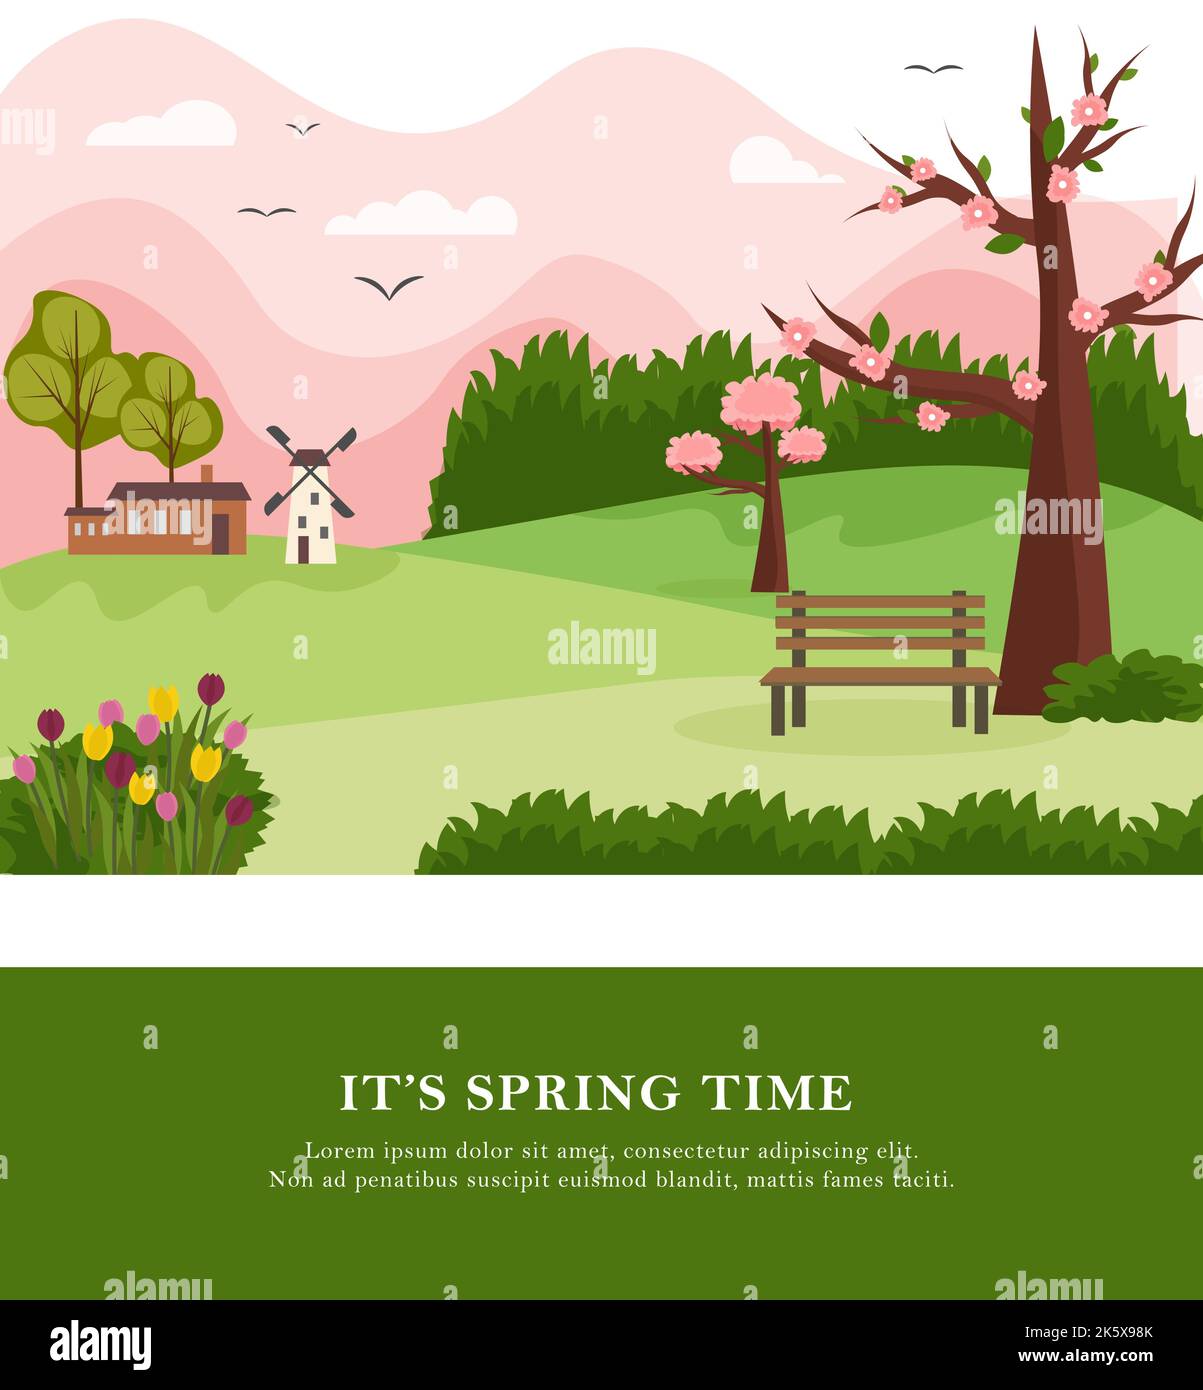 Postkarte mit ländlicher Landschaft im Frühling. Blühende Bäume, ein Haus und eine Mühle, Hügel und Berge. Vektorzeichnung. Stock Vektor